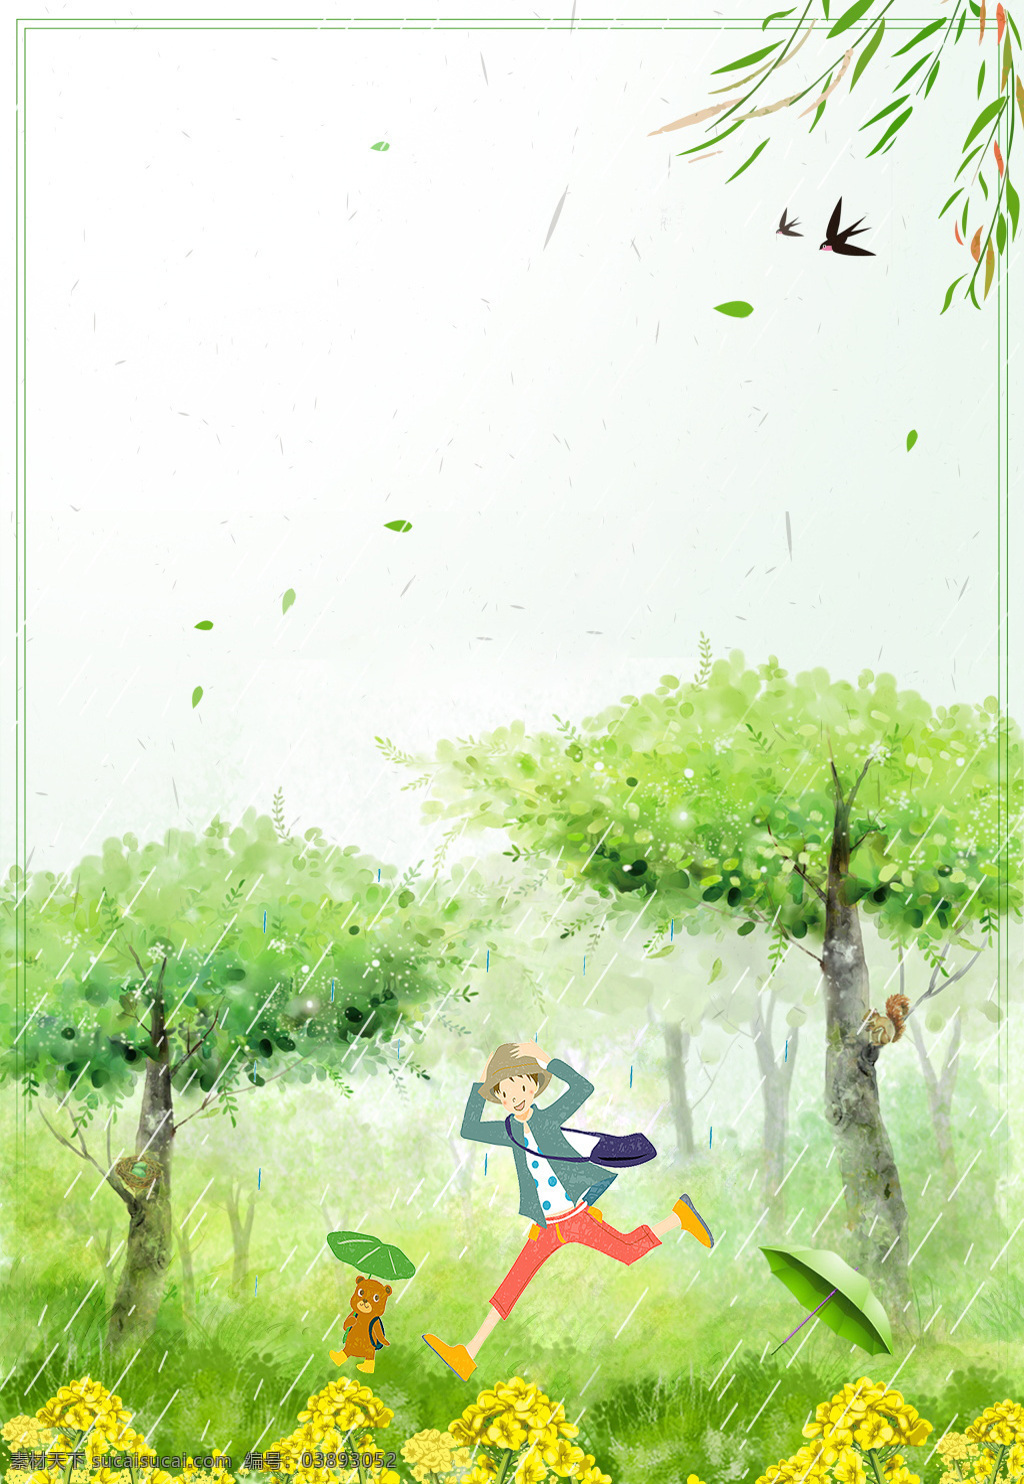 手绘 卡通 水彩 春天 背景 树林 雨伞 草地 男孩 雨天 燕子 柳叶